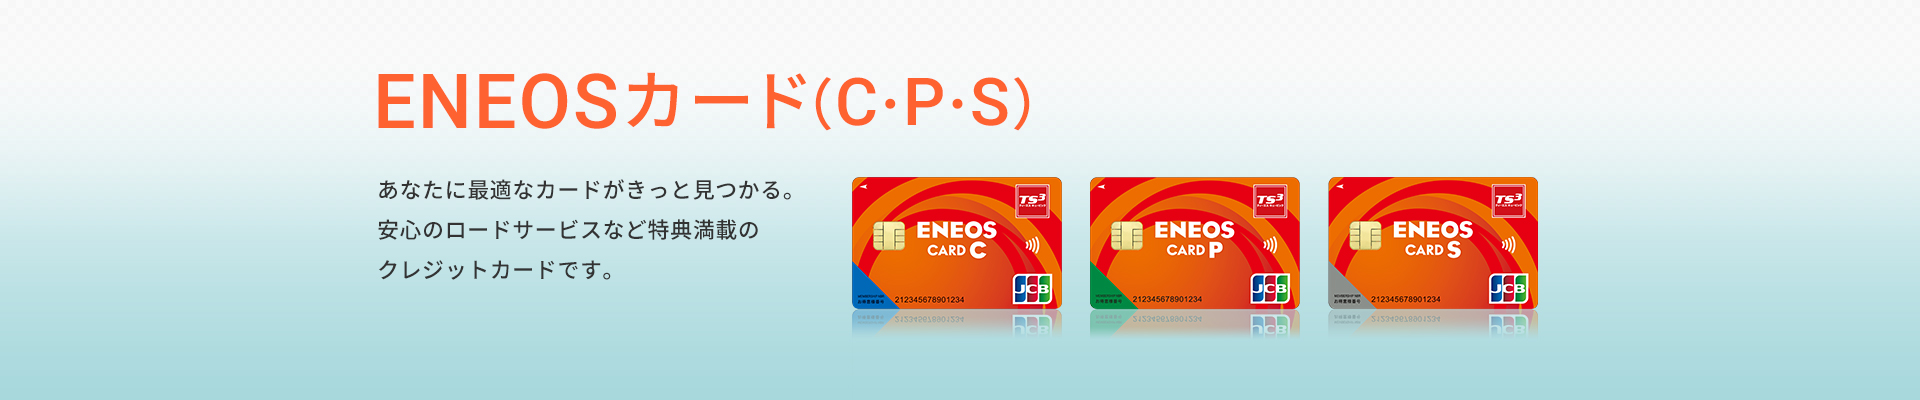 ENEOSカード（C・P・S）　あなたに最適なカードがきっと見つかる。安心のロードサービスなど特典満載のクレジットカードです。